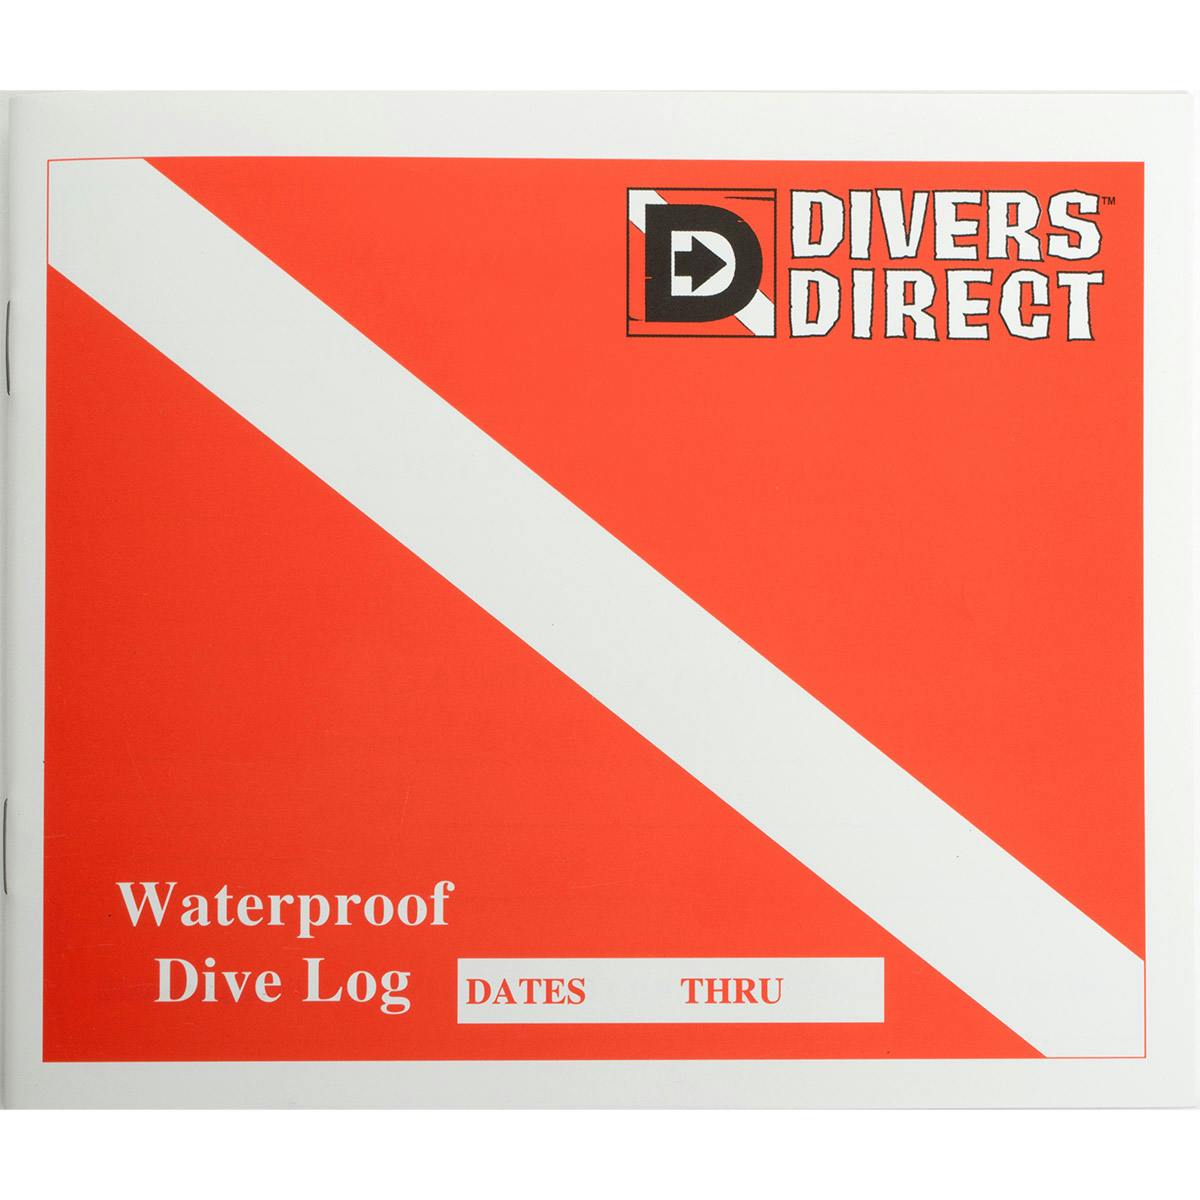 Waterproof Dive Log Book Cover